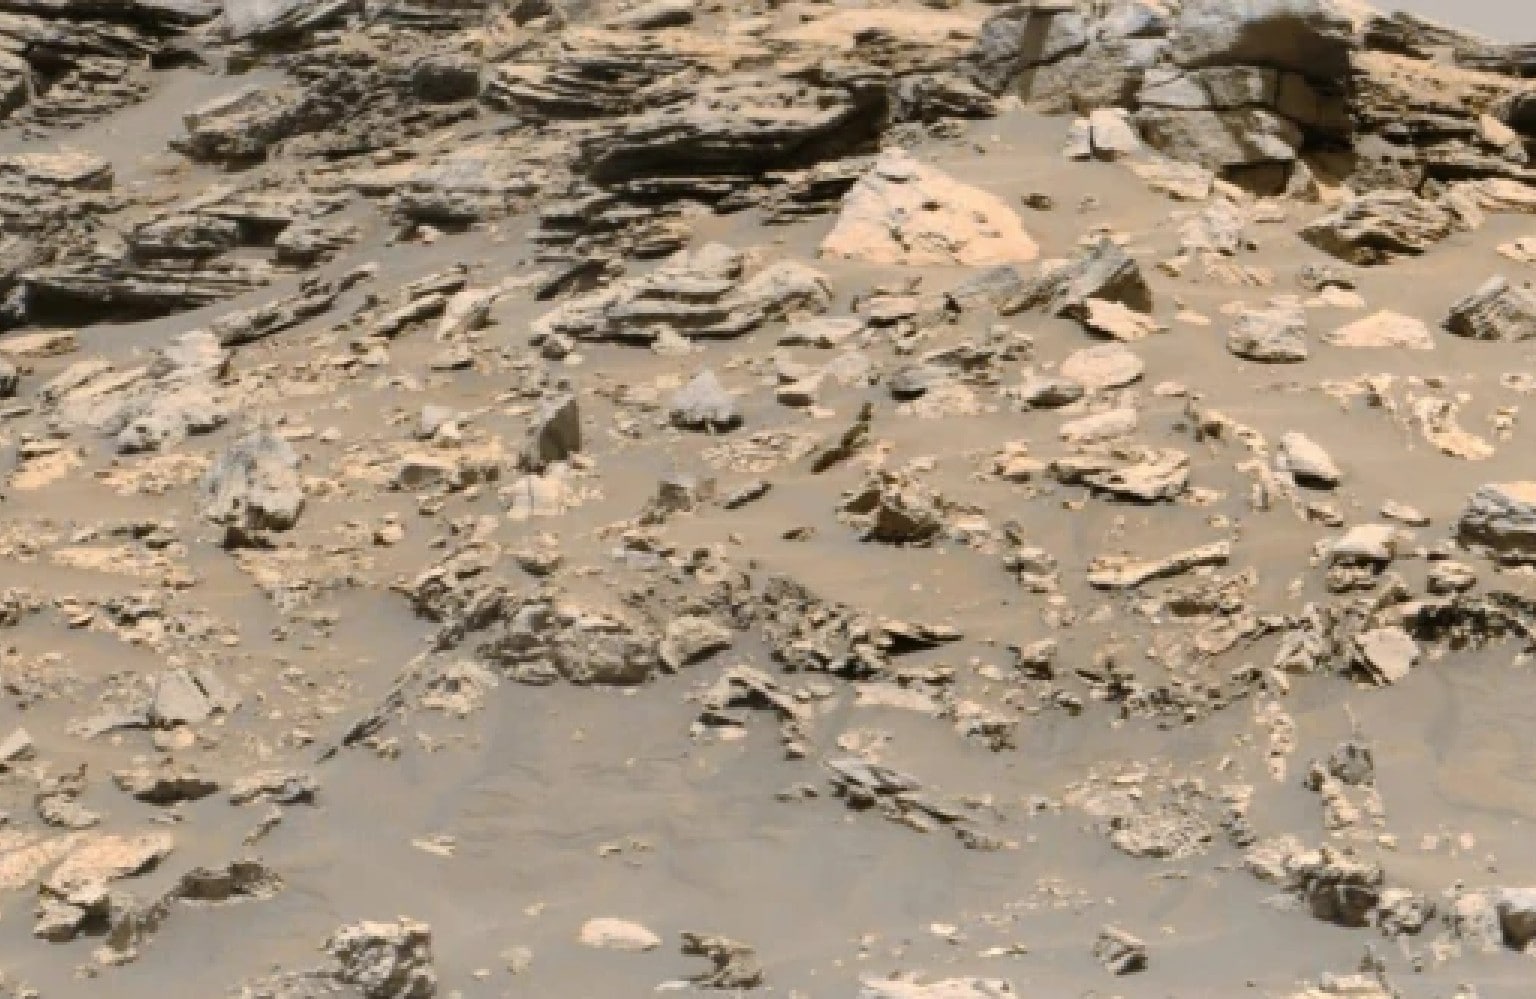 मंगल ग्रह पर मिला हाथी जैसा जीव! अपने दावे के साथ एलियन रिसर्चर ने शेयर की तस्‍वीर